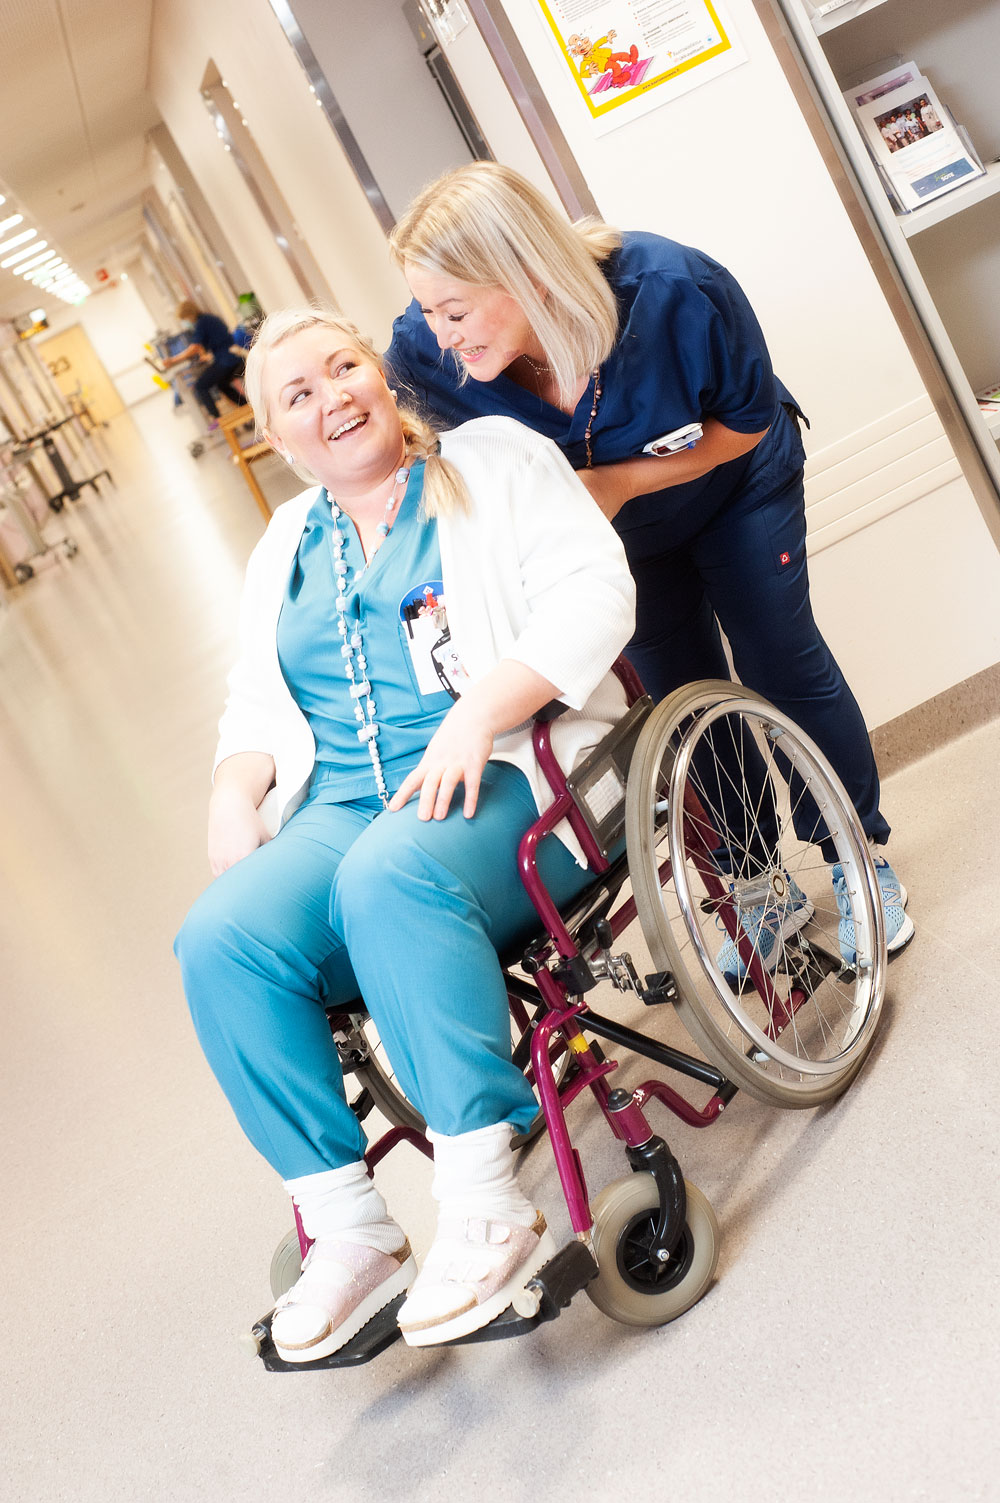 Sillaisen akuuttikuntoutusosastolla on töissä hauskaa muulloinkin kuin kuvaustilanteessa, toteavat Jenni Hirvonen ja Mari Matikainen hassutellessaan pyörätuolilla.